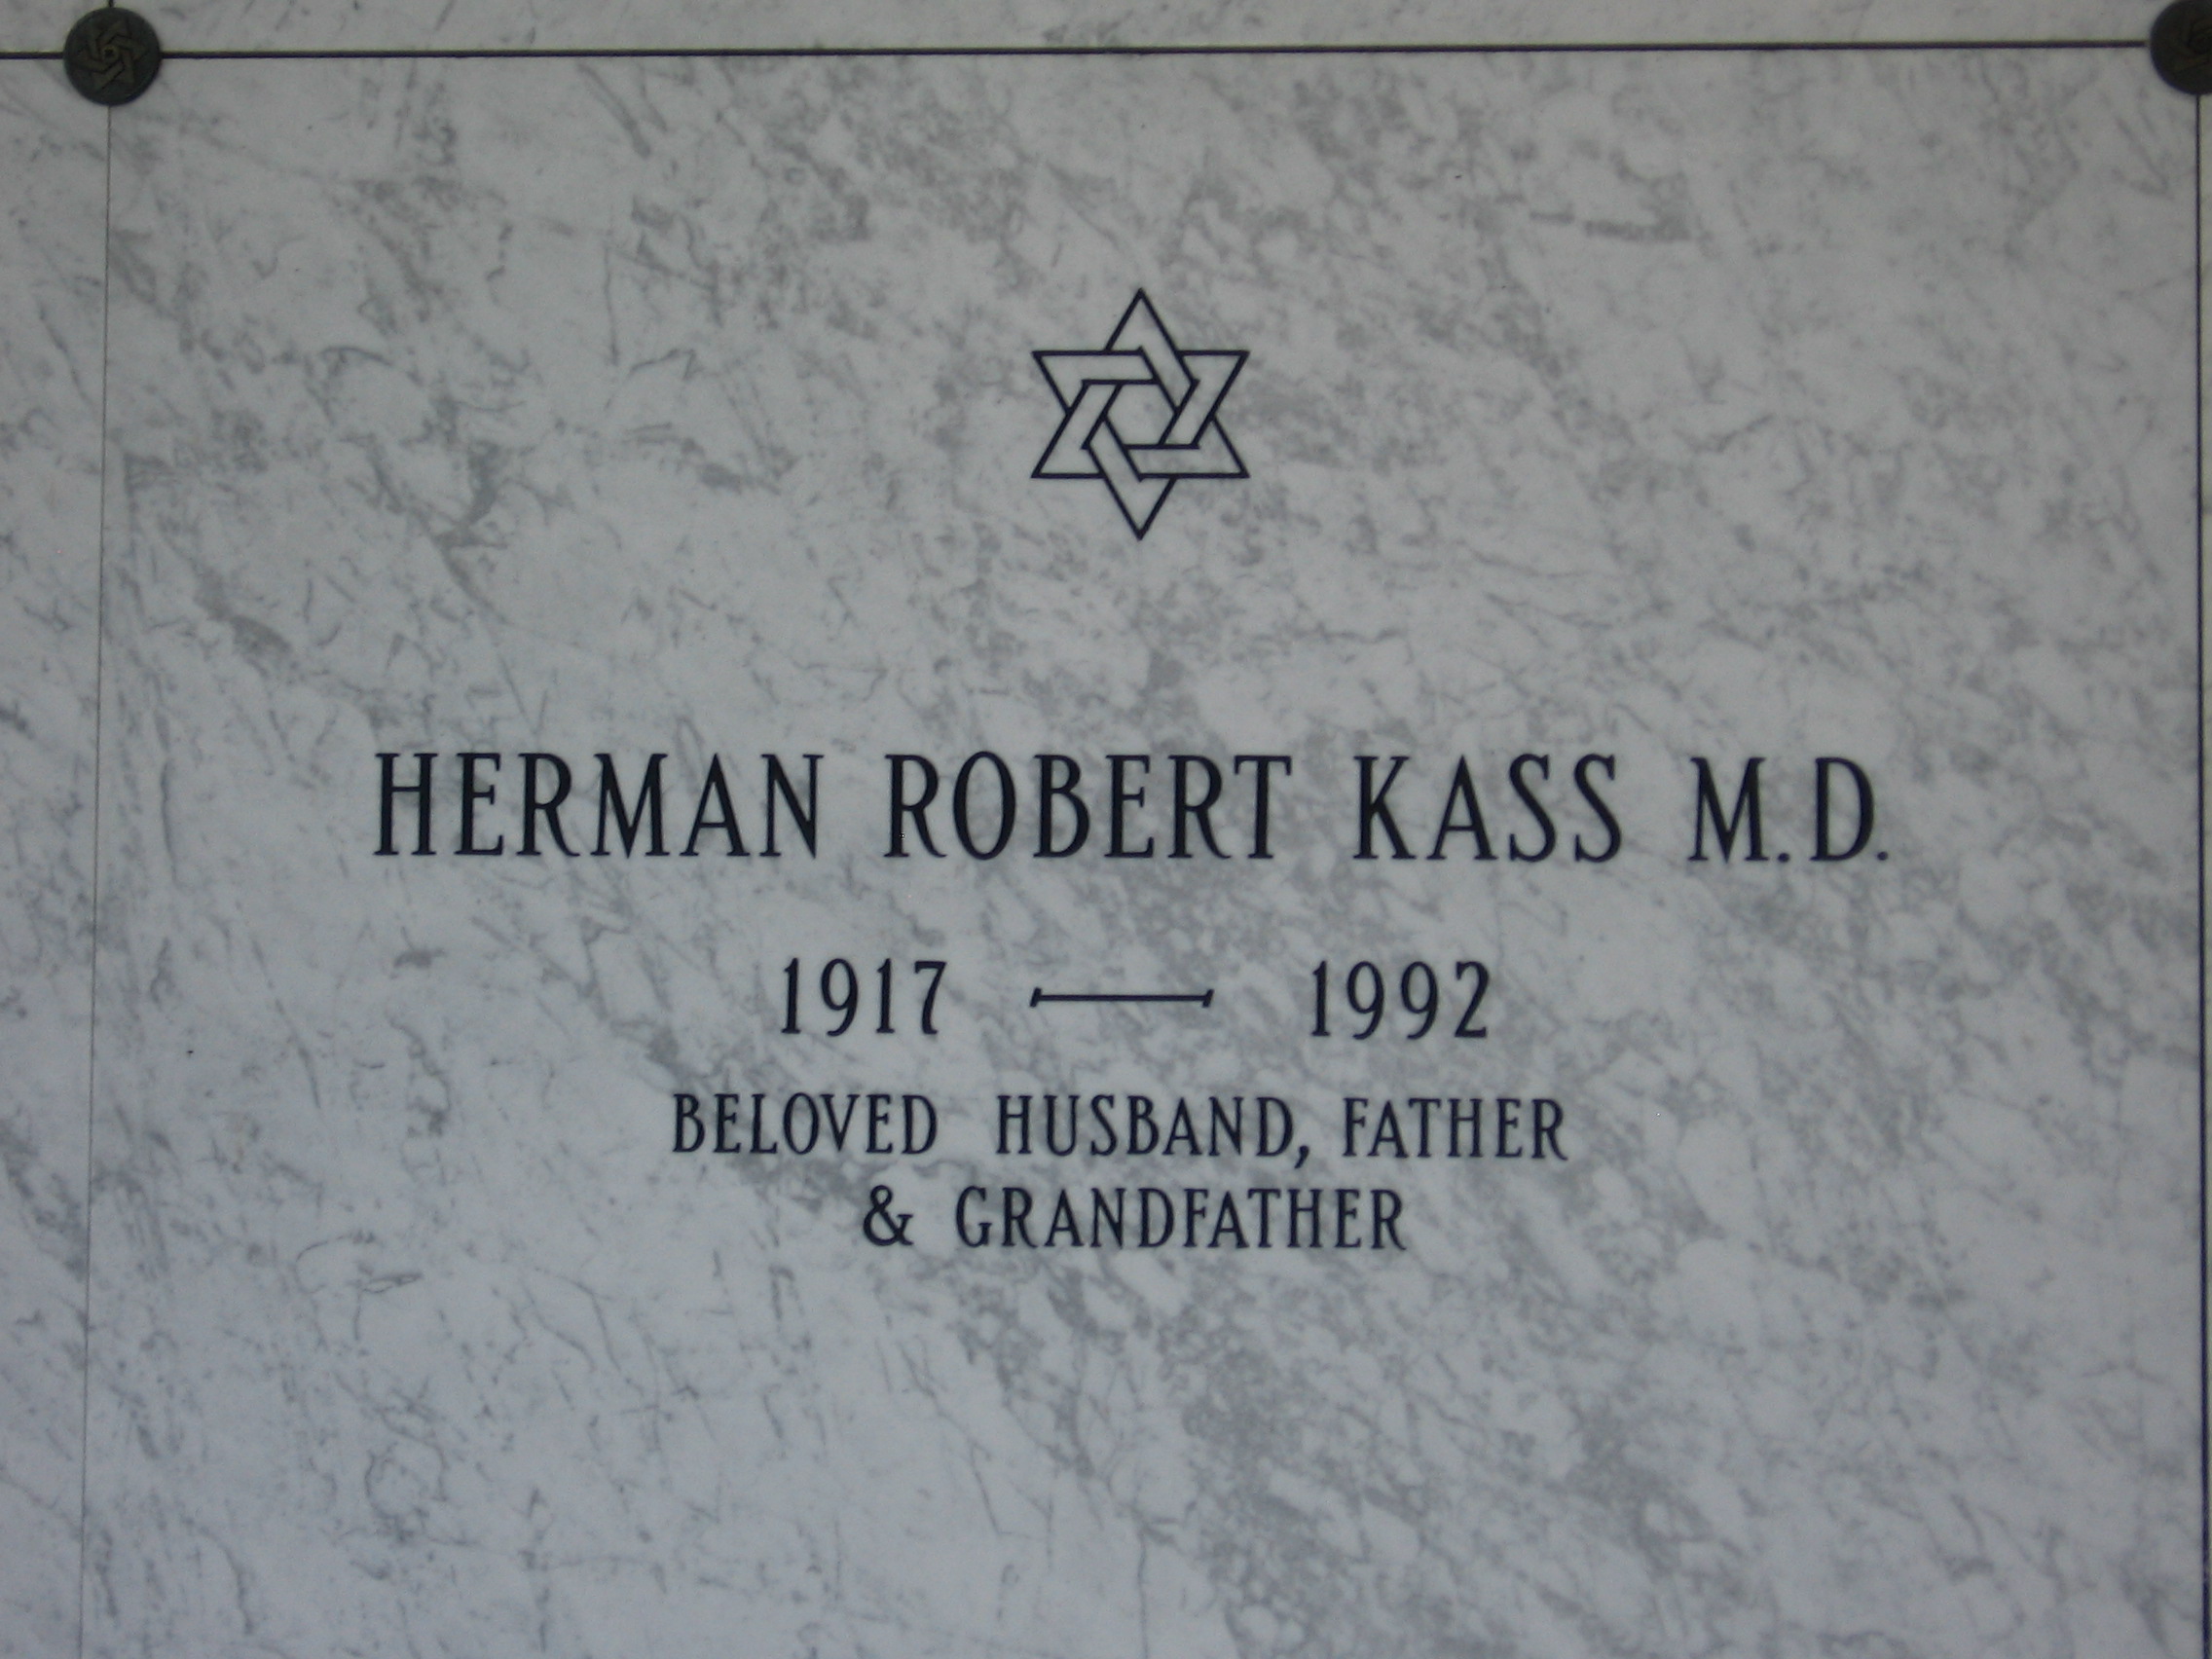 Herman Robert Kass